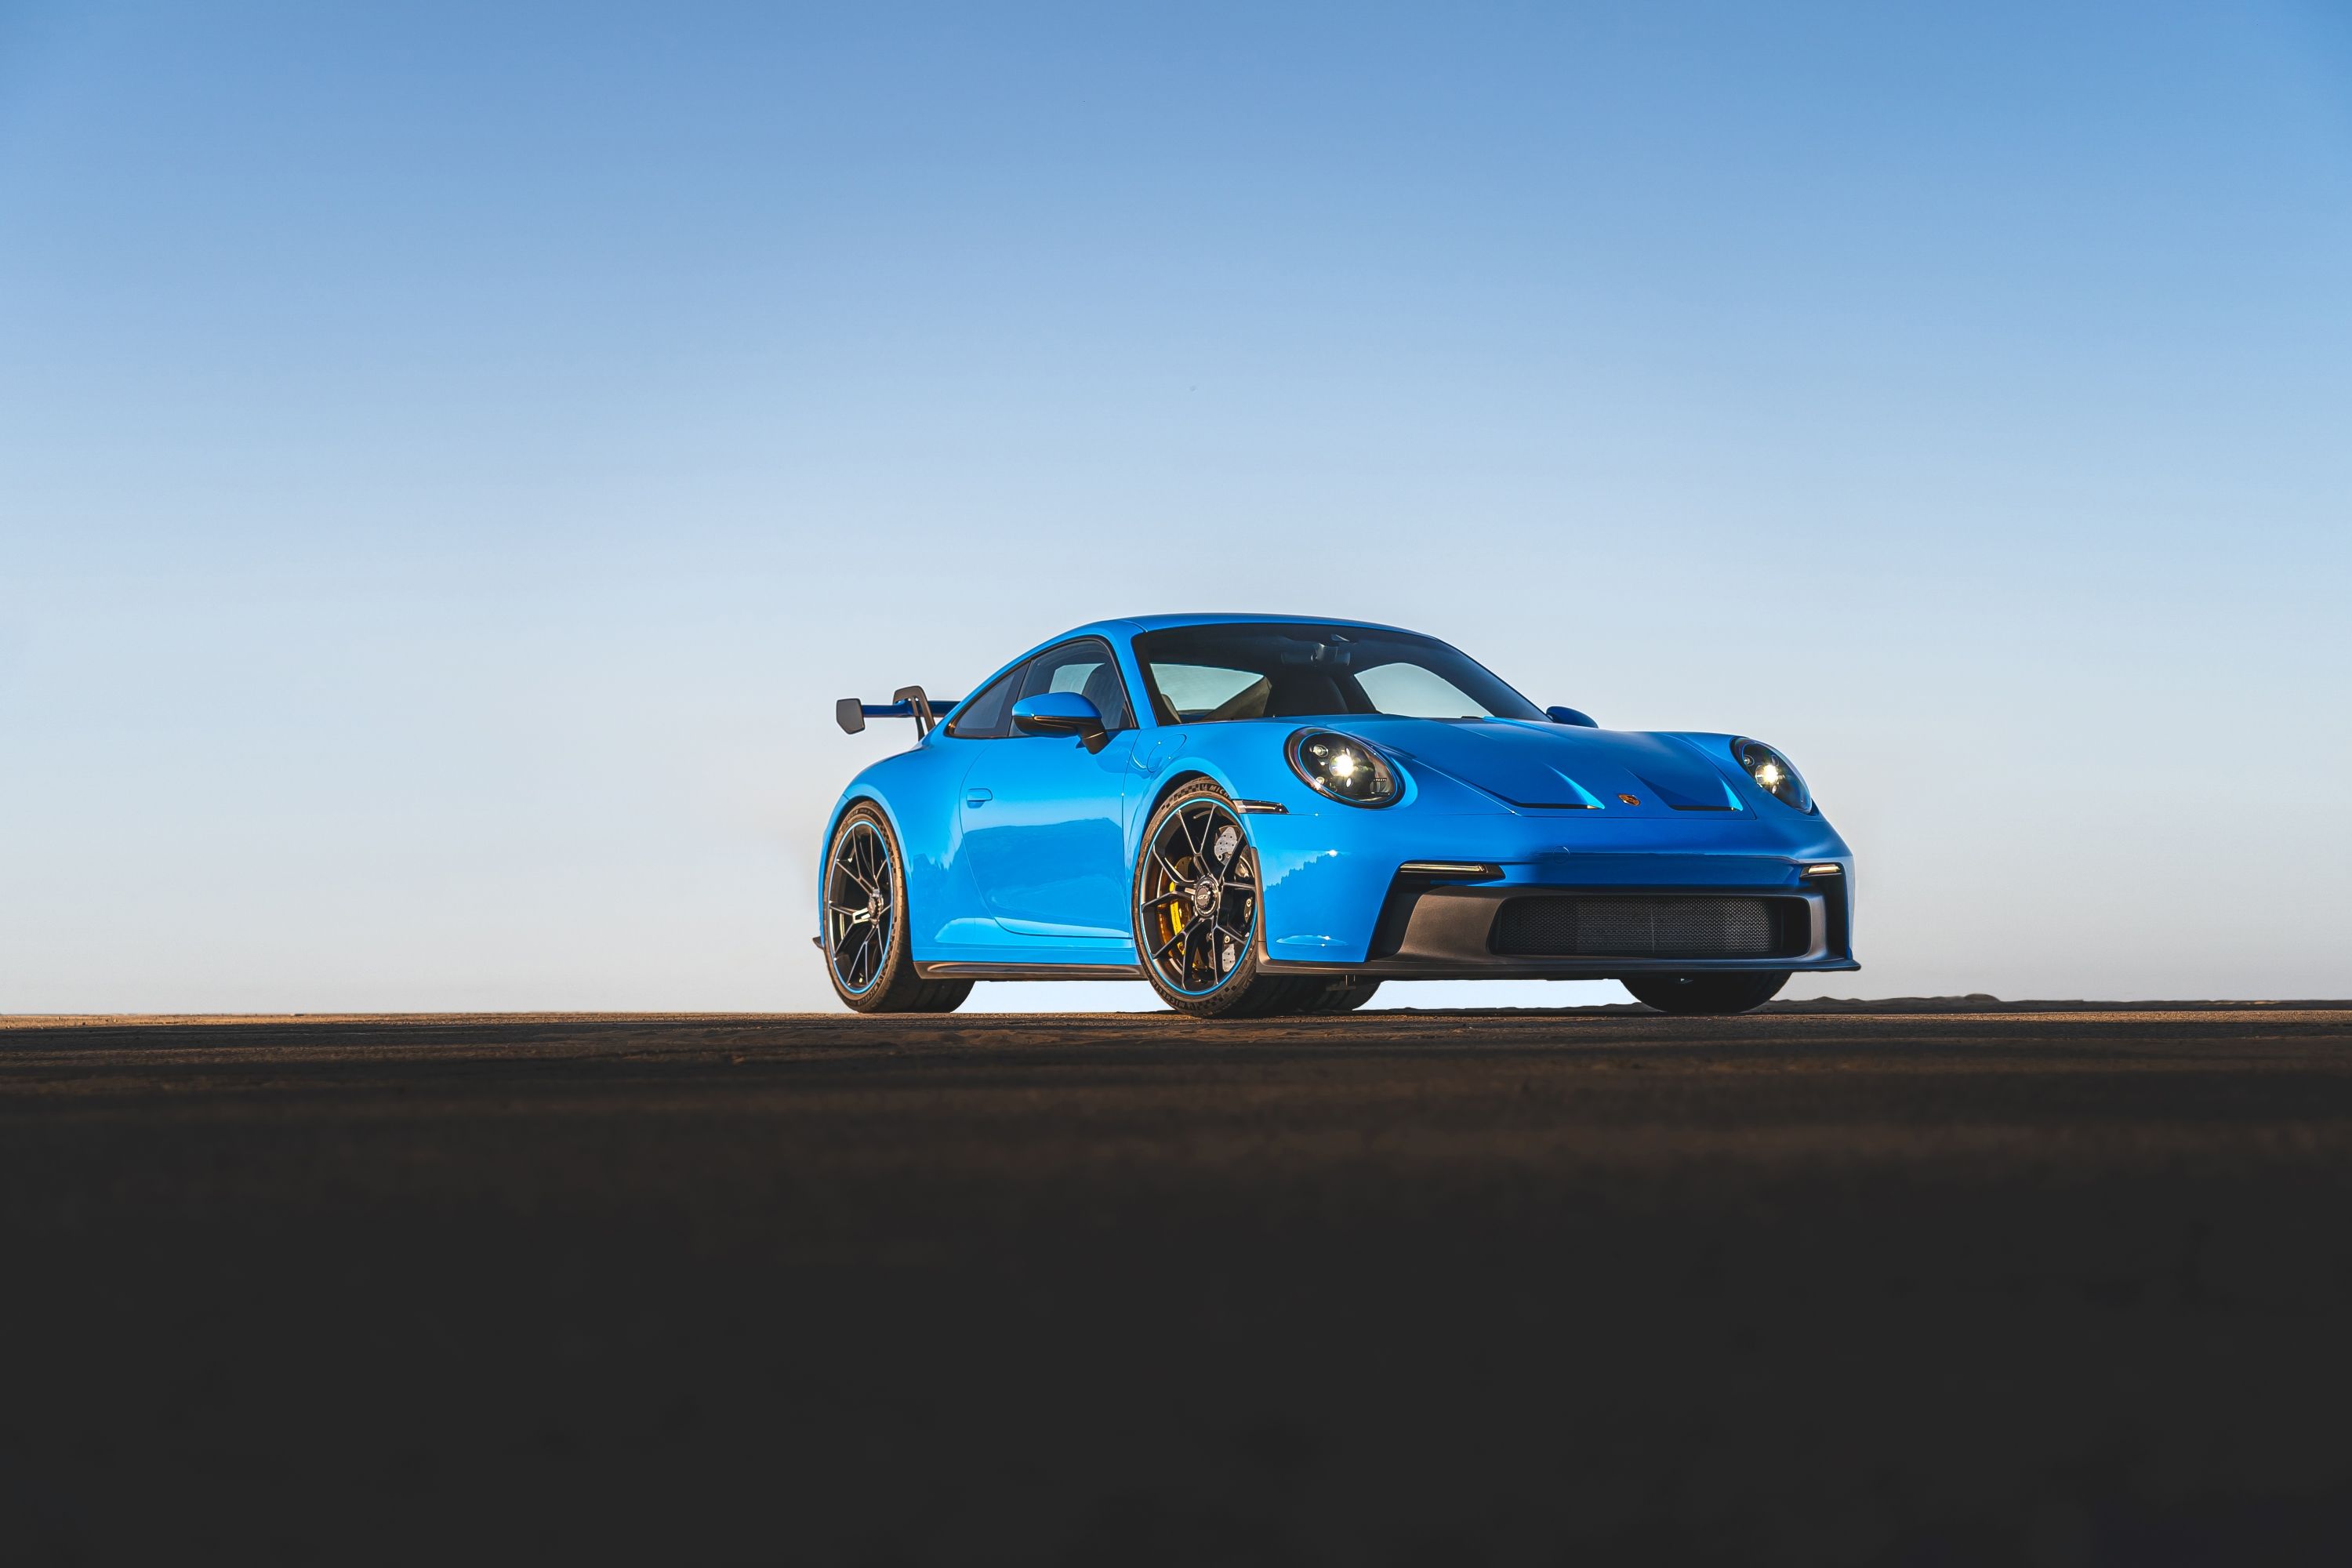 502-HP 2022 Porsche 911 GT3 Costs $17,600 More Than 